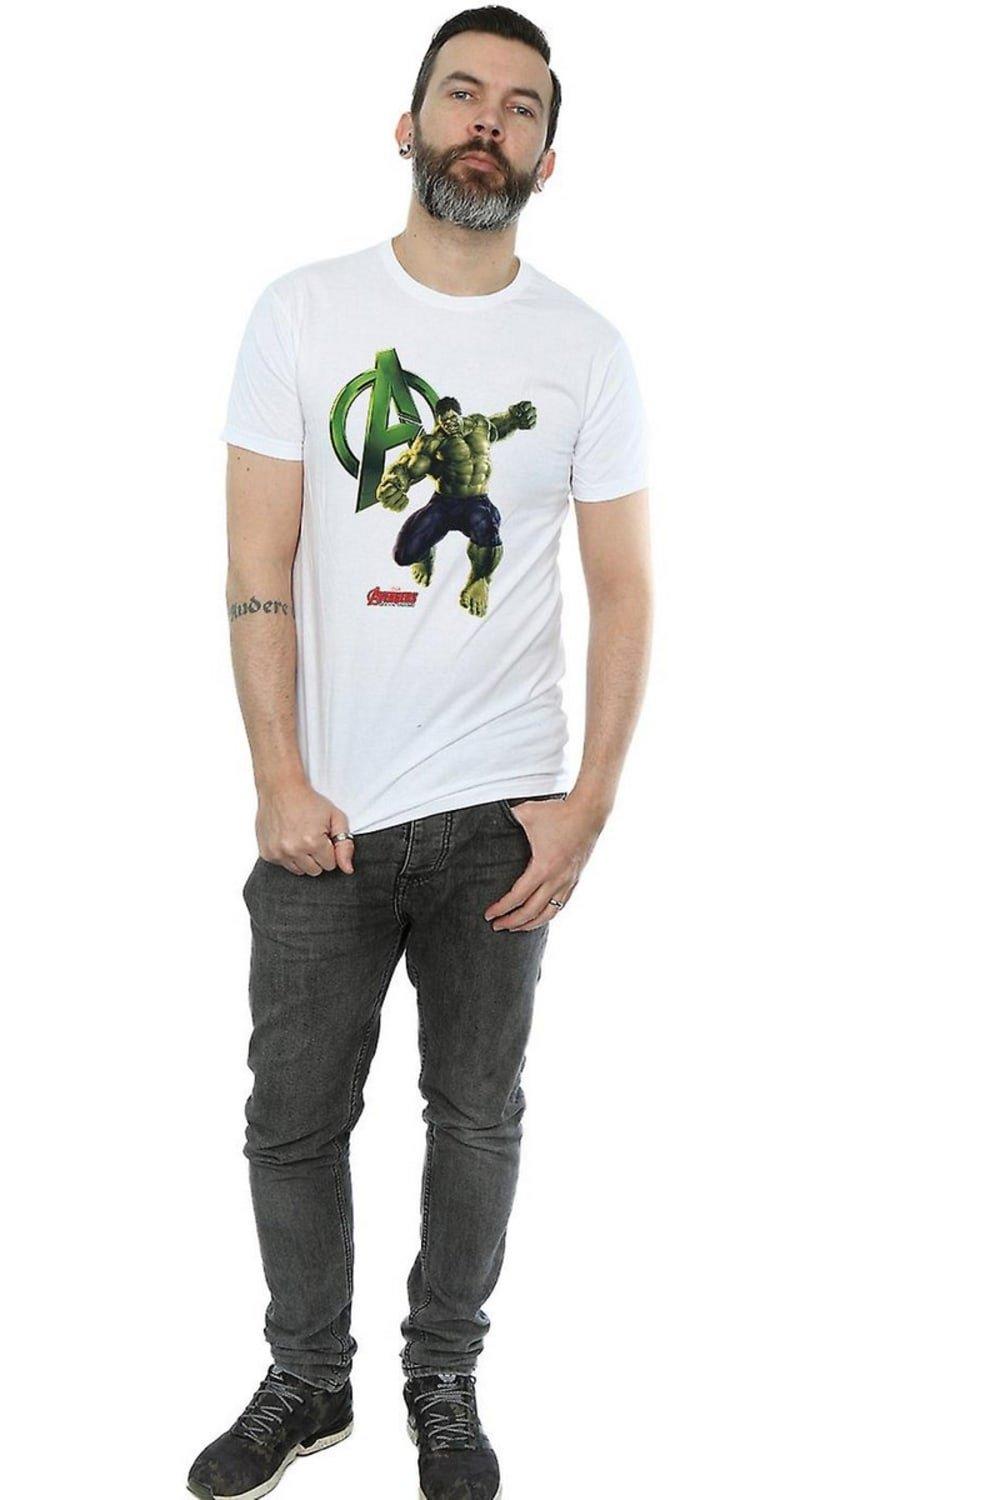 hulk pose cotton t-shirt